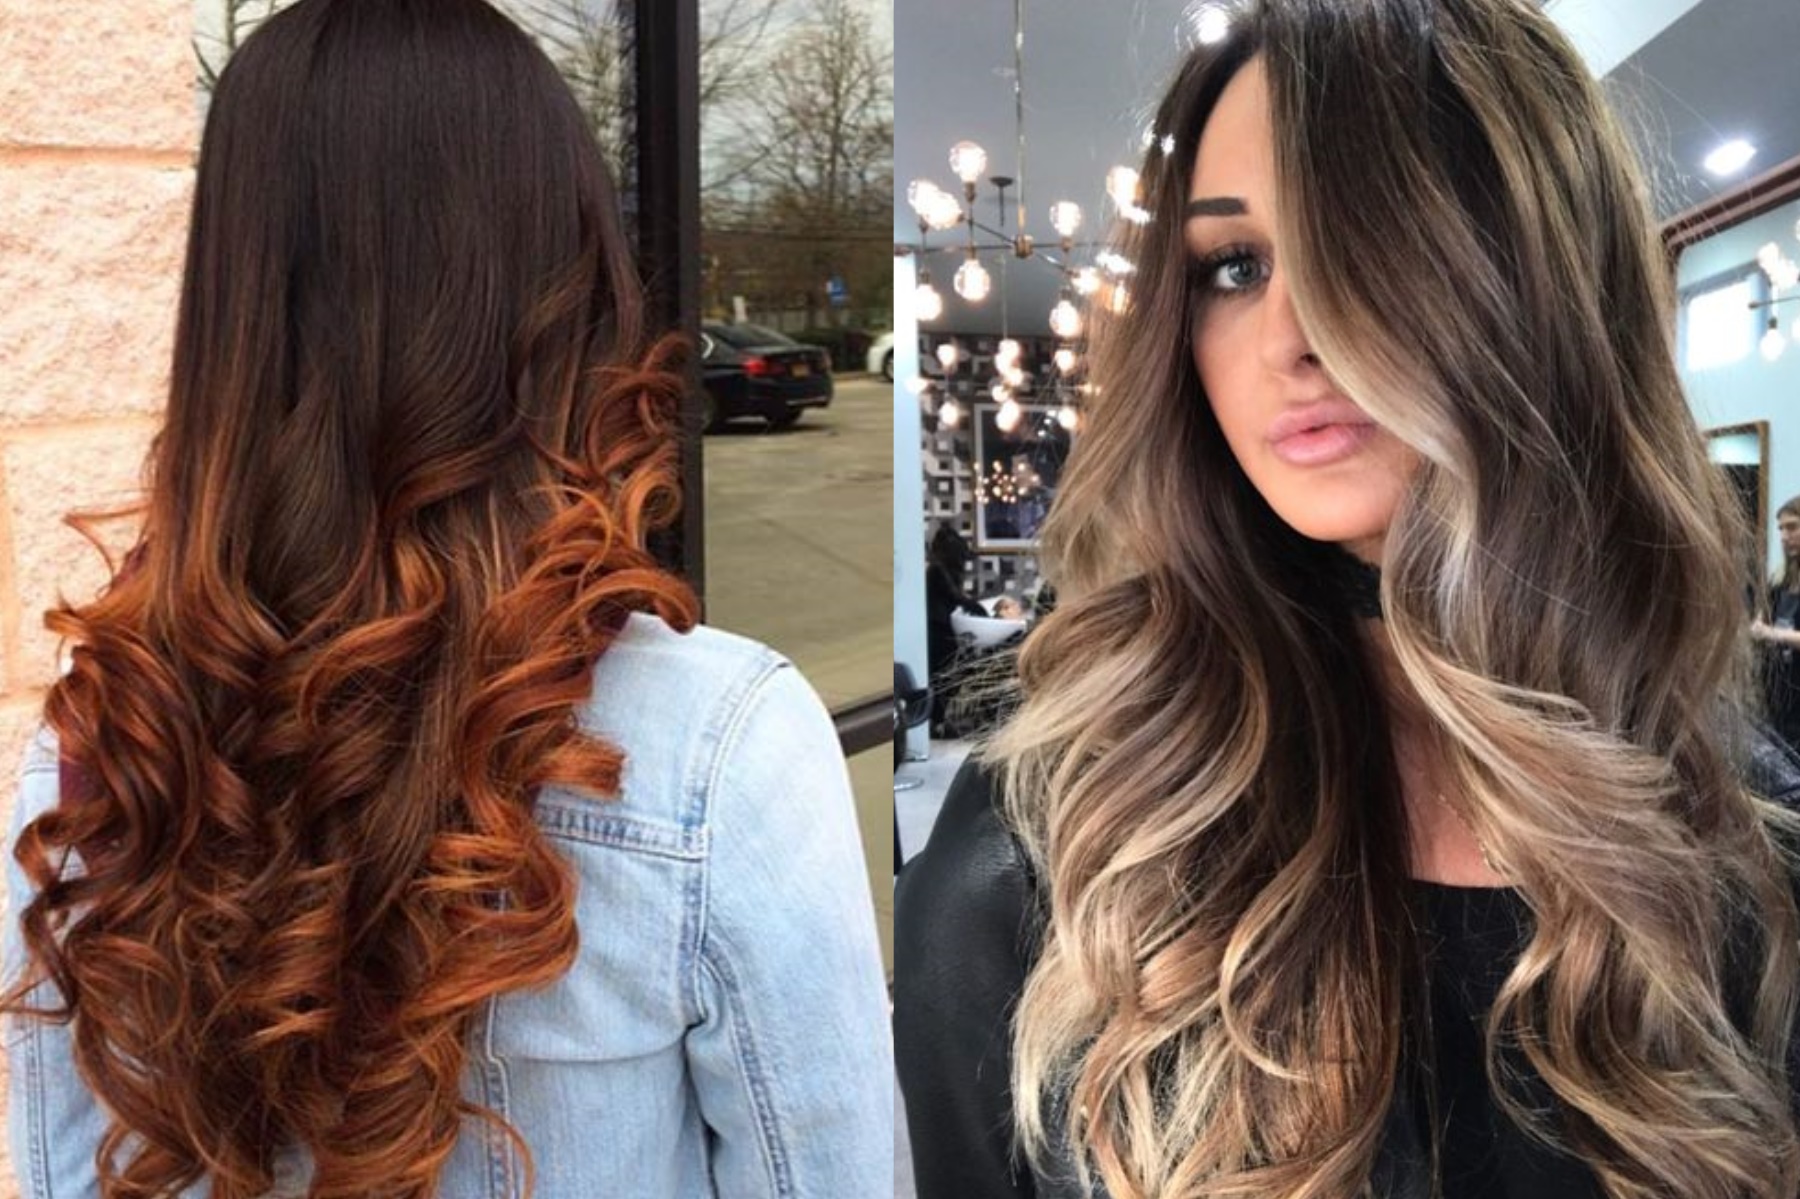 Окрашивание волос балаяж фото на темные волосы фото до и после